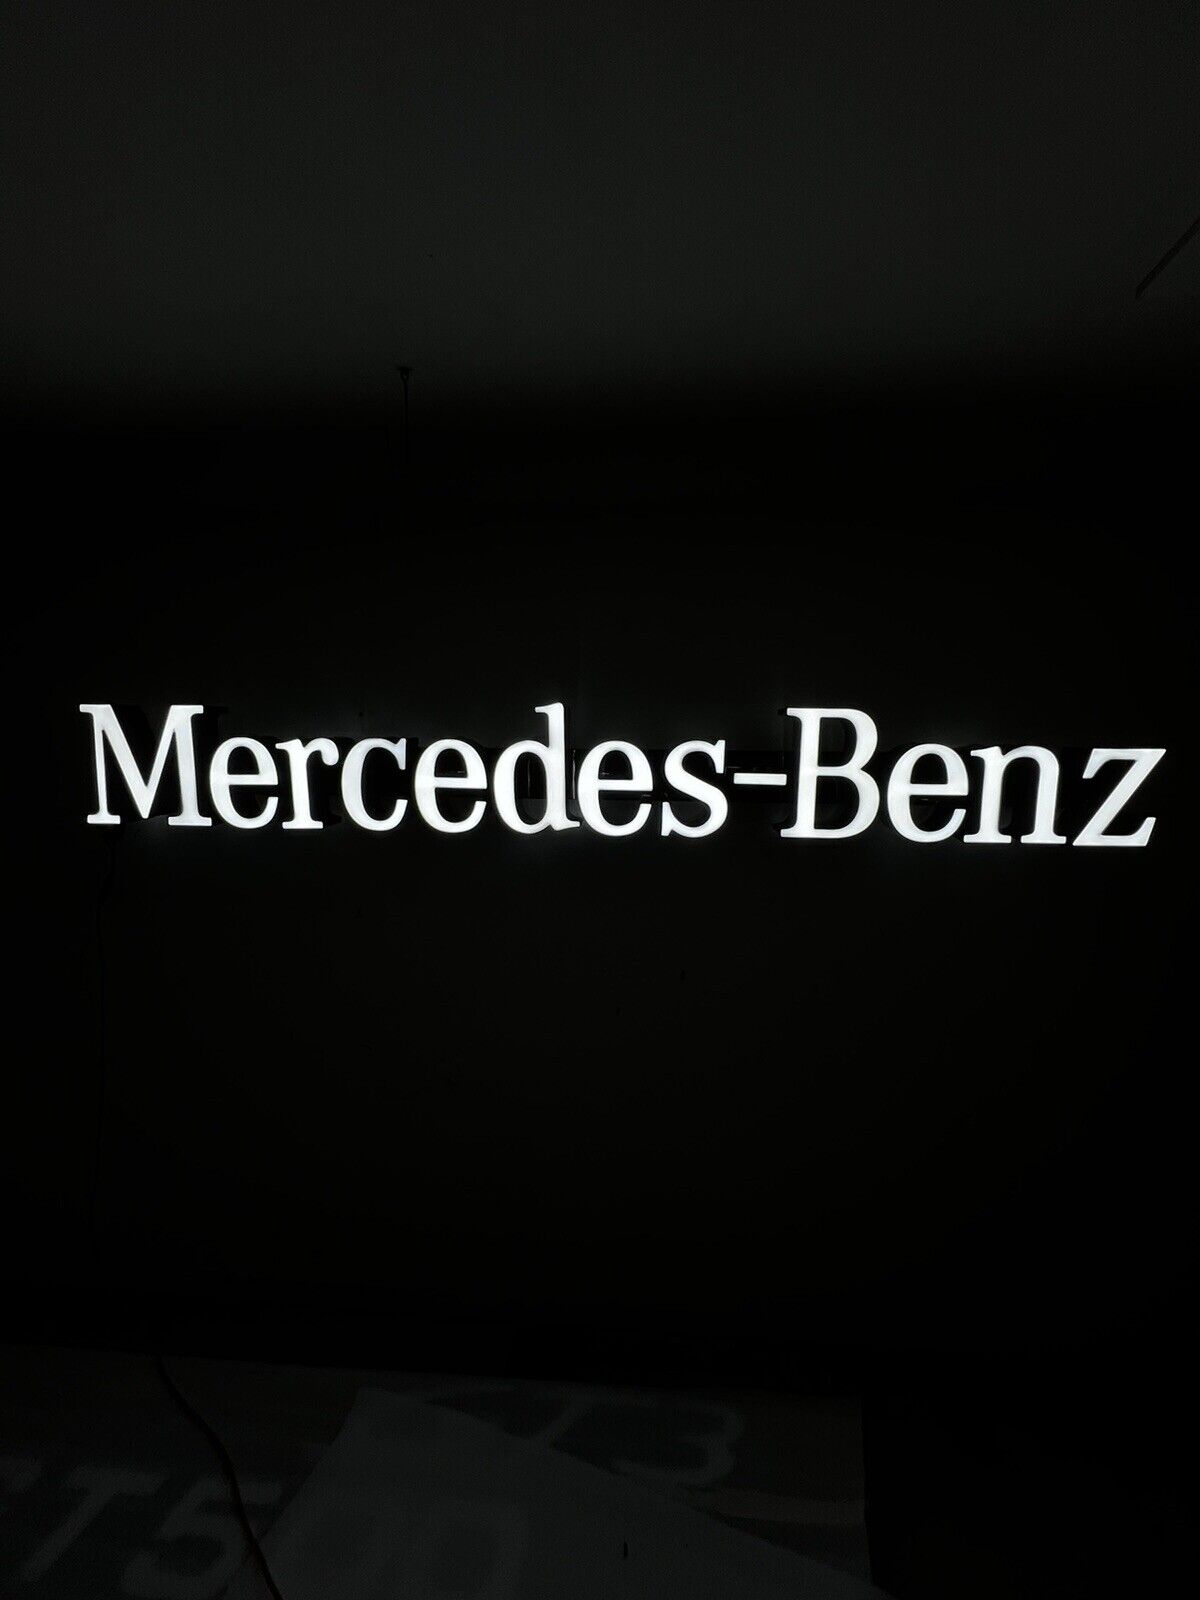 10.5’ Mercedes Benz Dealership Sign